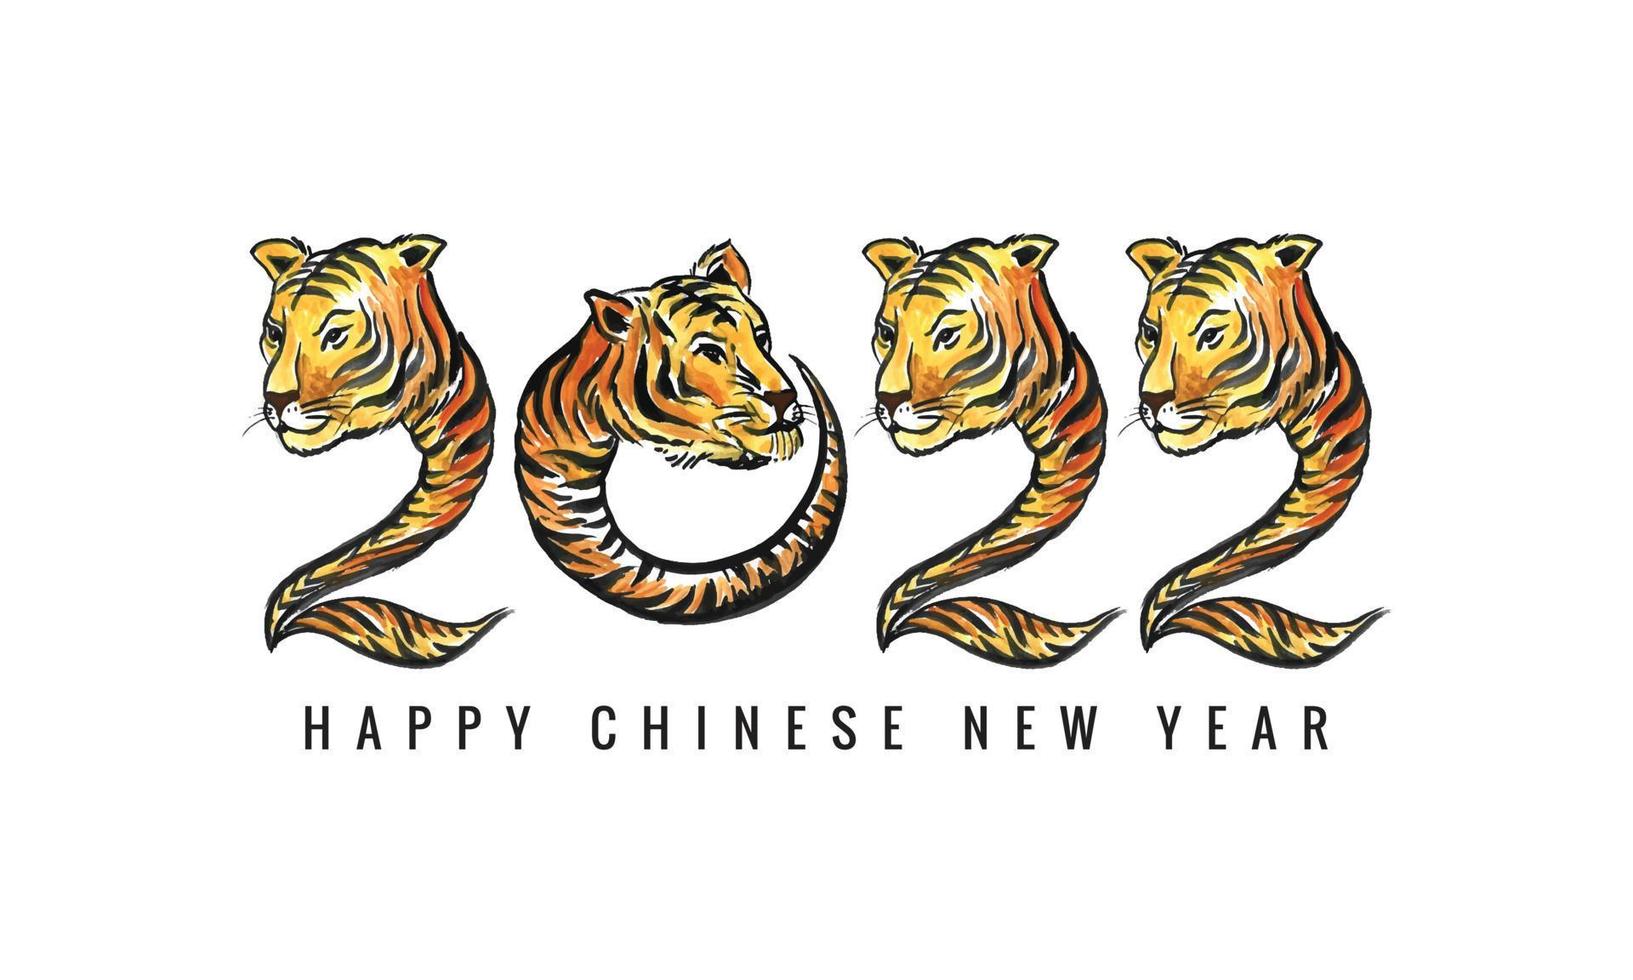 símbolo do ano novo chinês de 2022 decorado com um design de cartão de rosto de tigre vetor